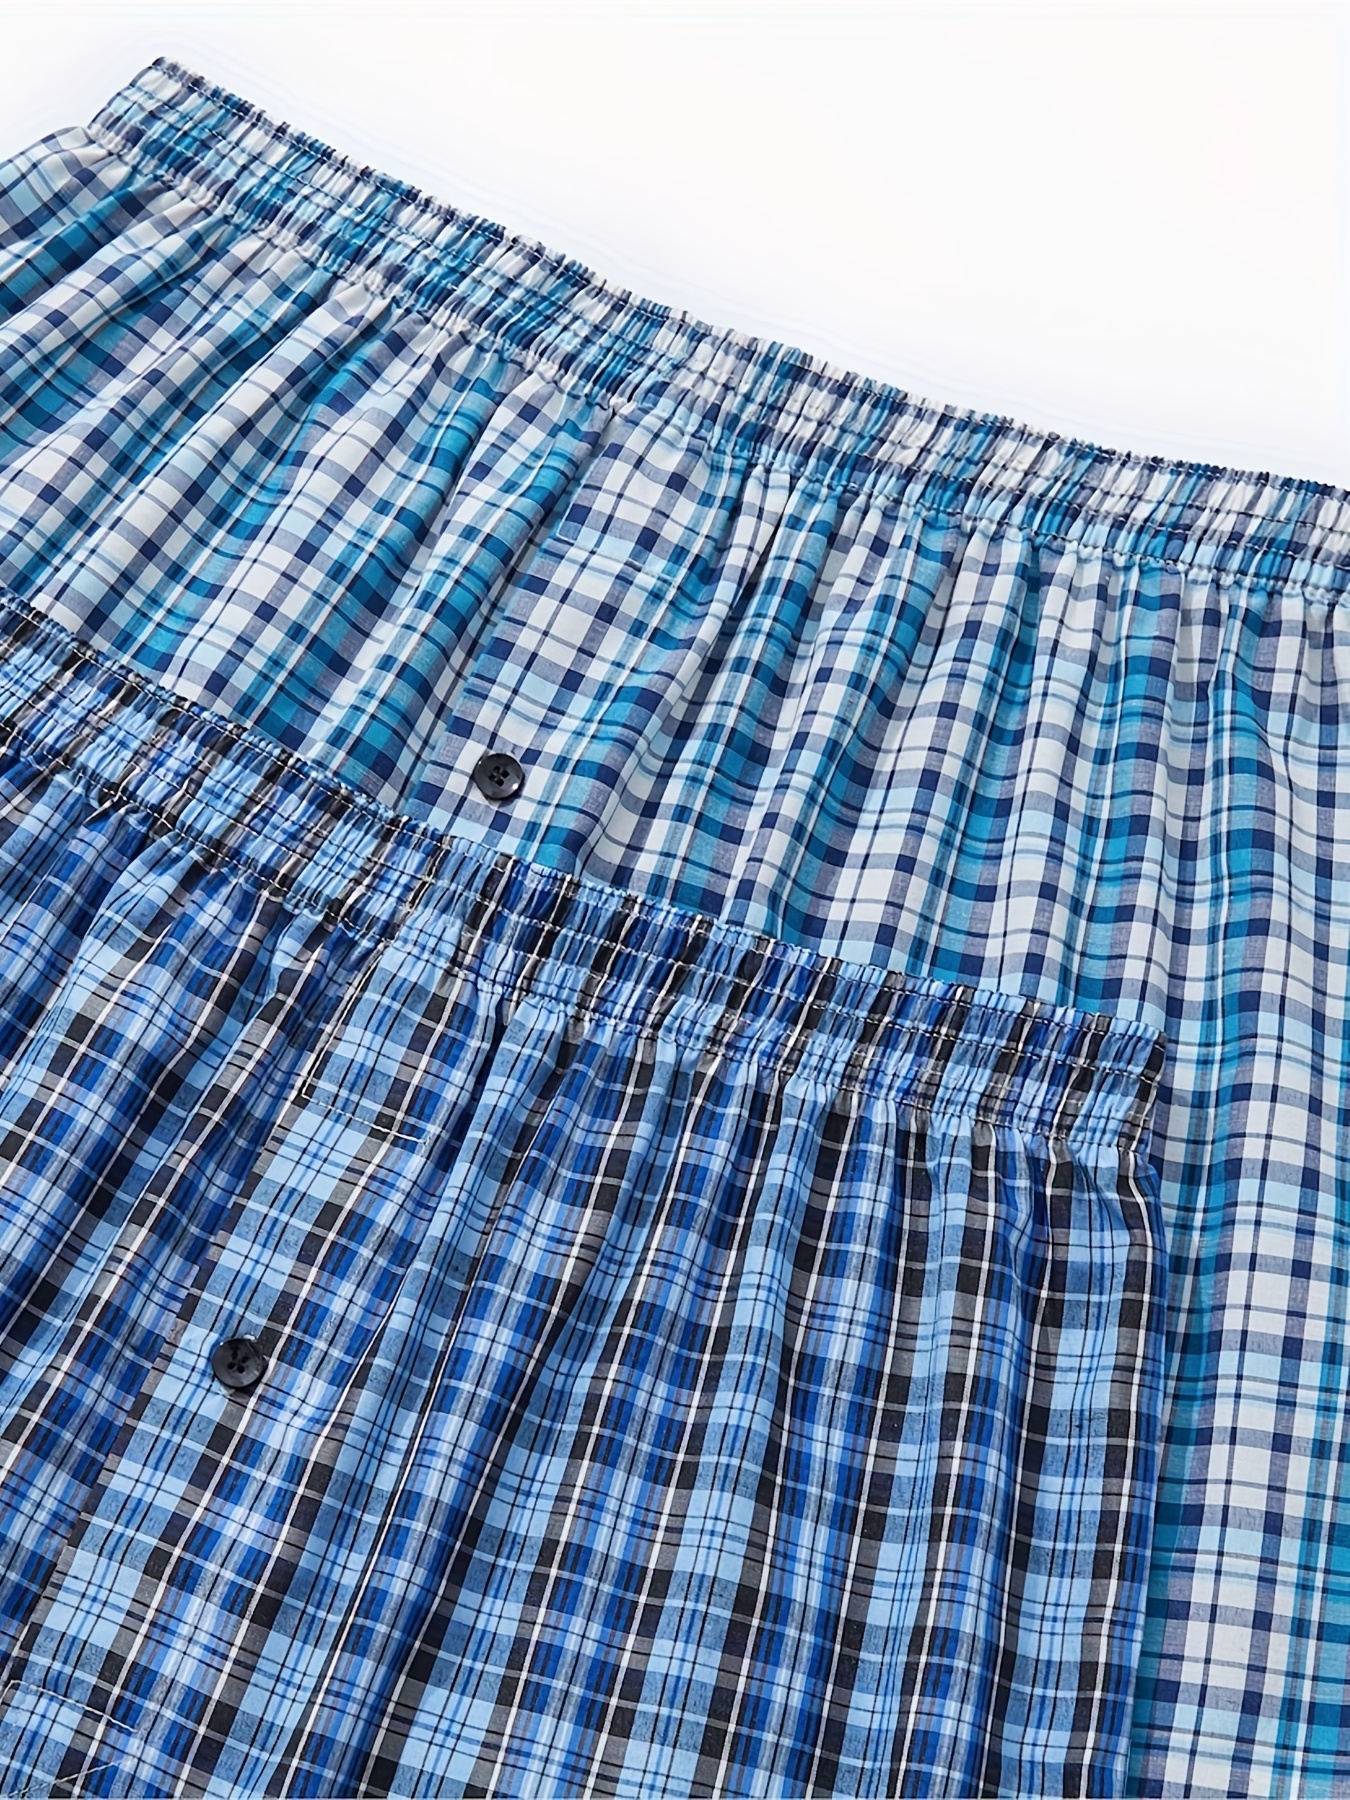 JupiterSecret Men's Woven Boxers Underwear Pack Cotton Boxer Shorts  Assorted Colors at  Men's Clothing store